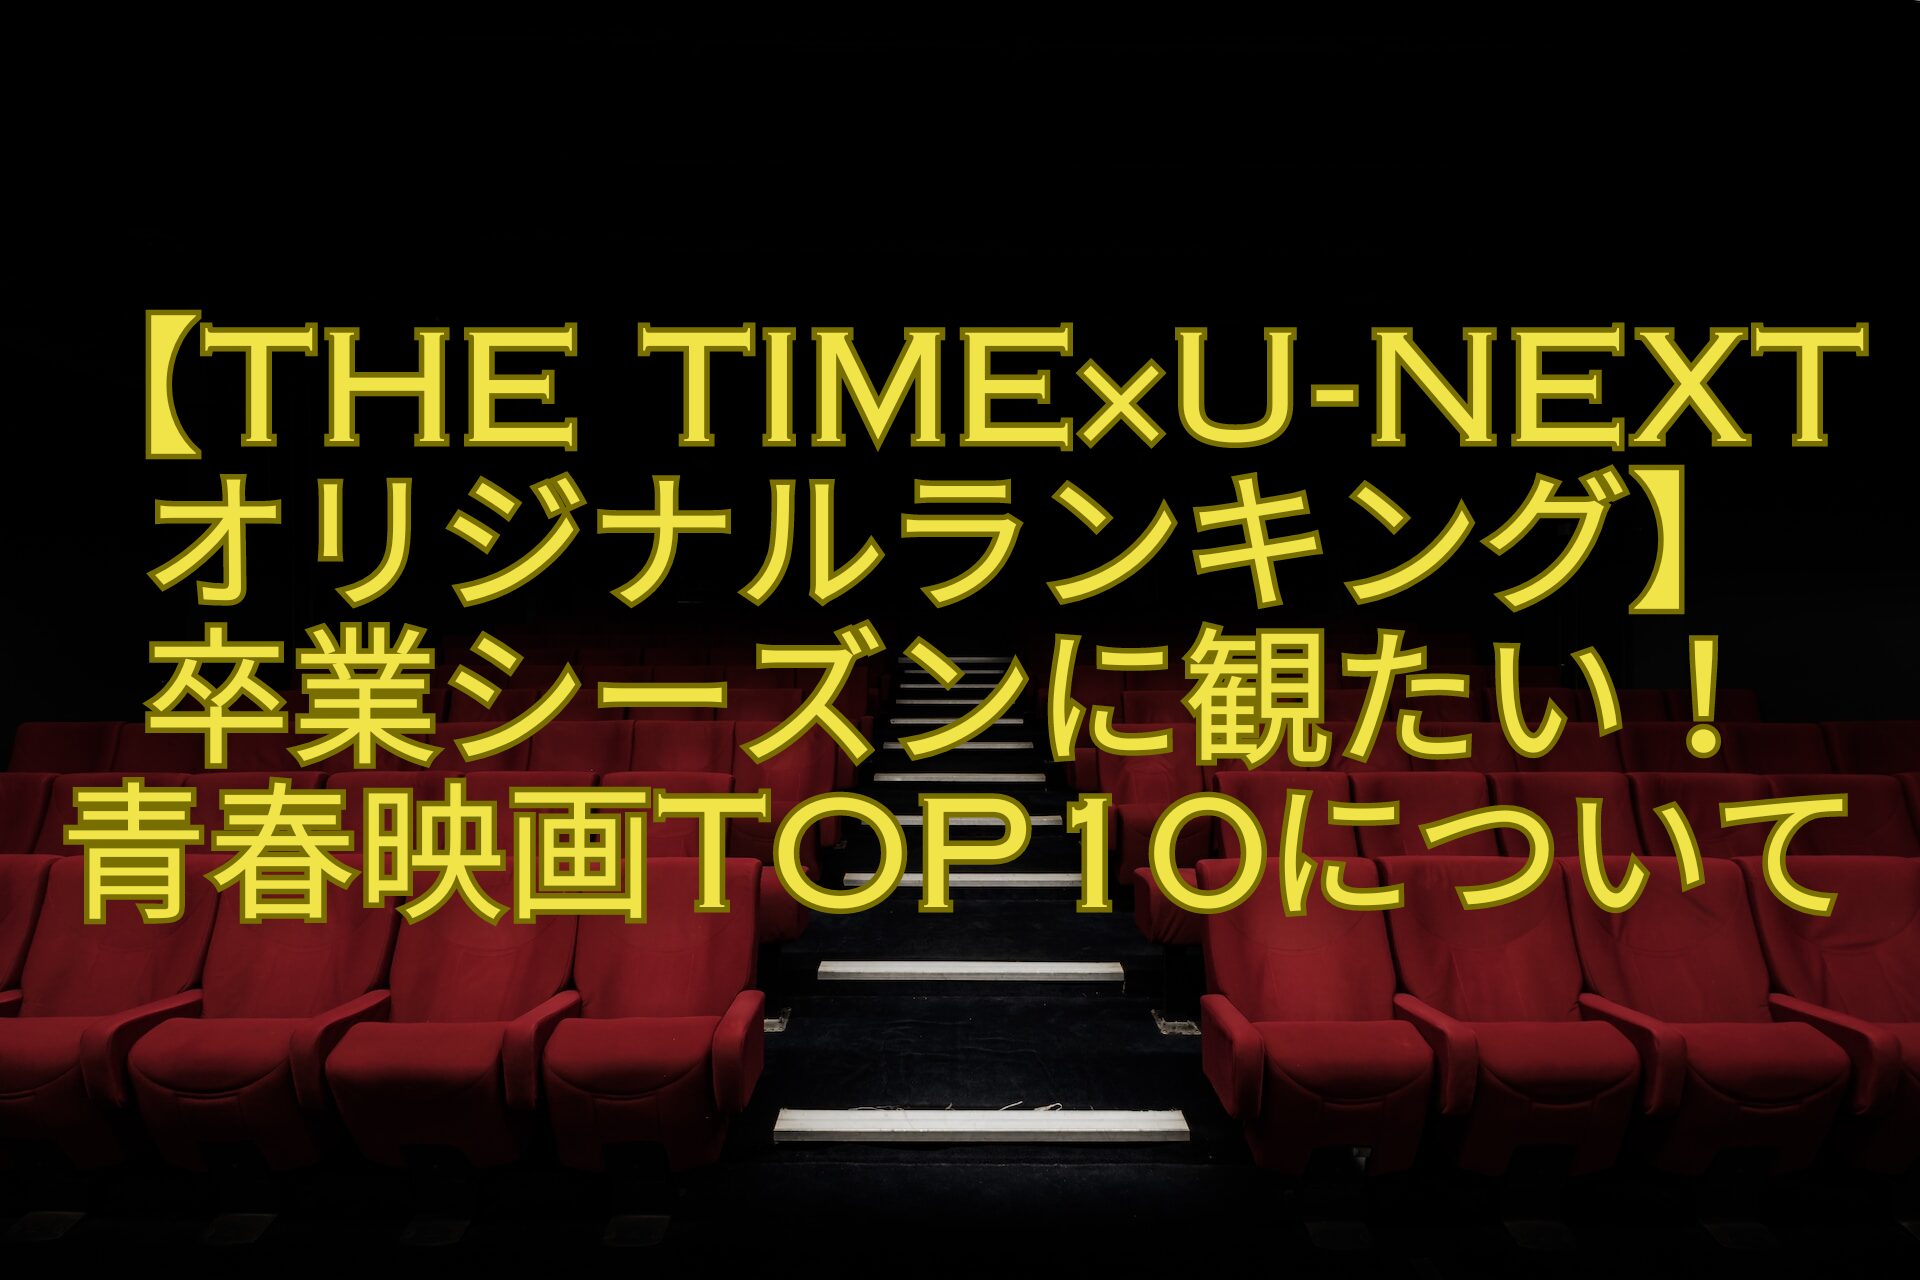 【THE-TIME×U-NEXTオリジナルランキング】-卒業シーズンに観たい！-青春映画TOP10について